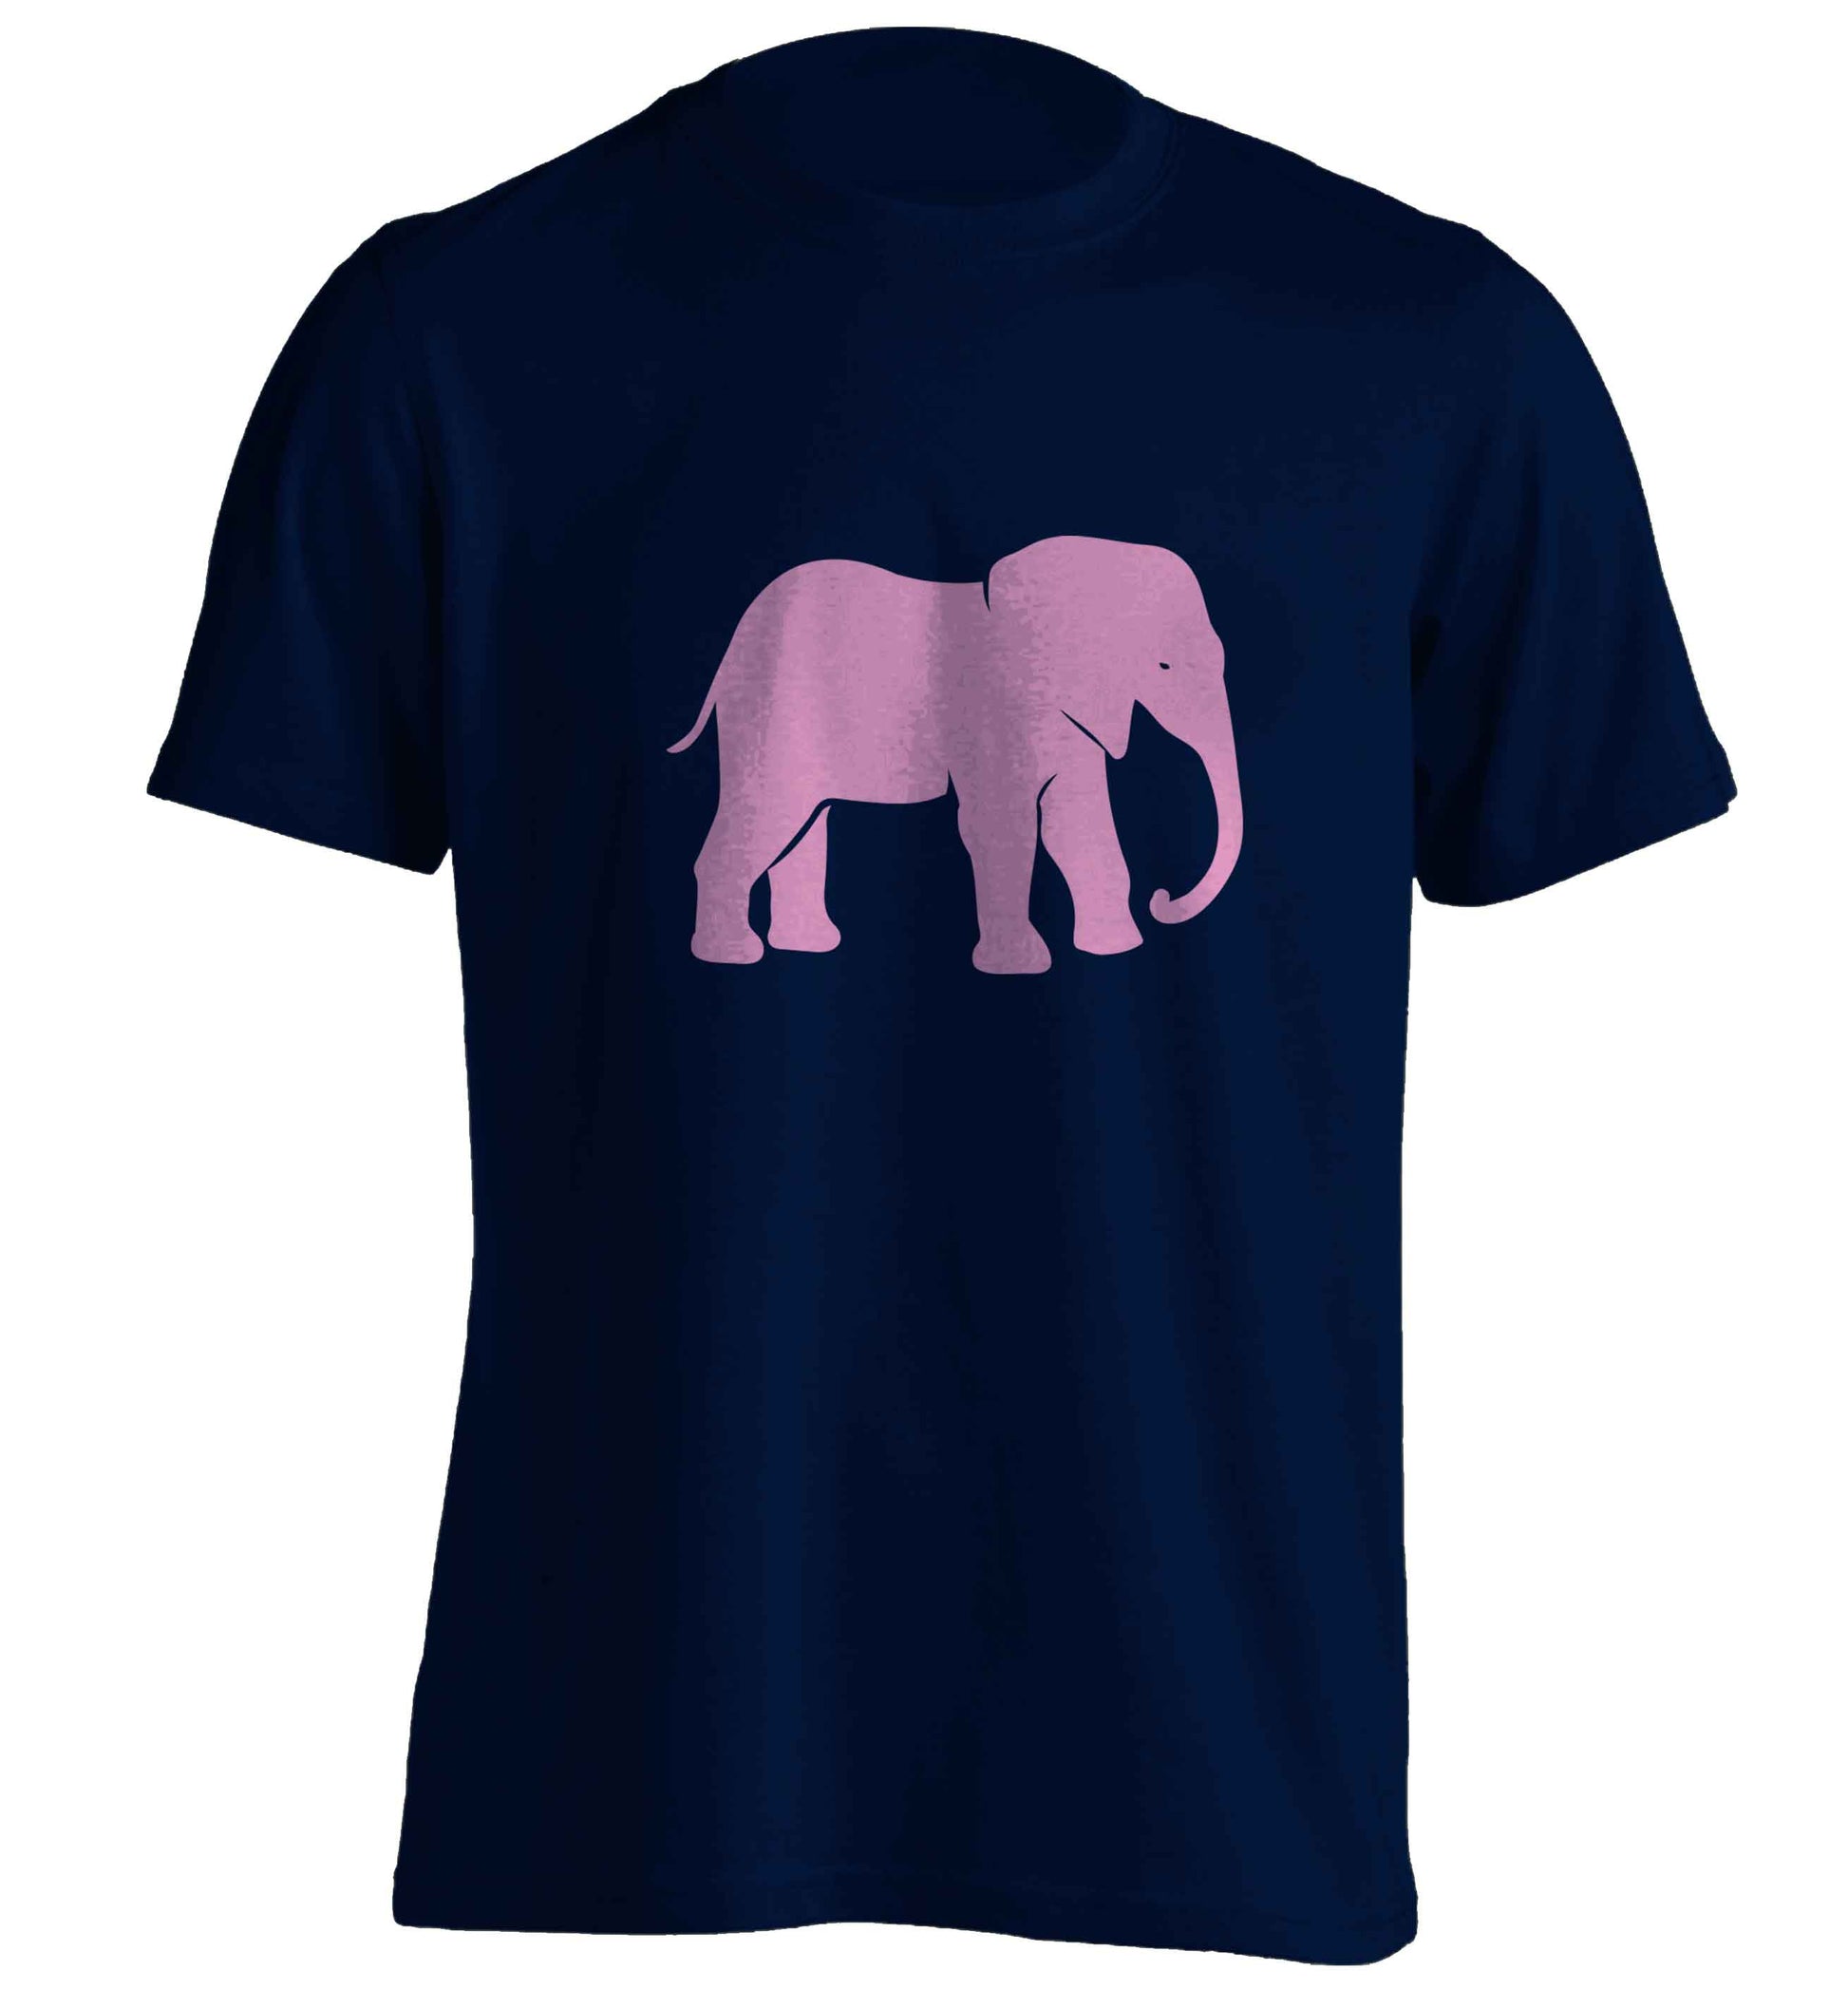 Pink elephant adults unisex navy Tshirt 2XL